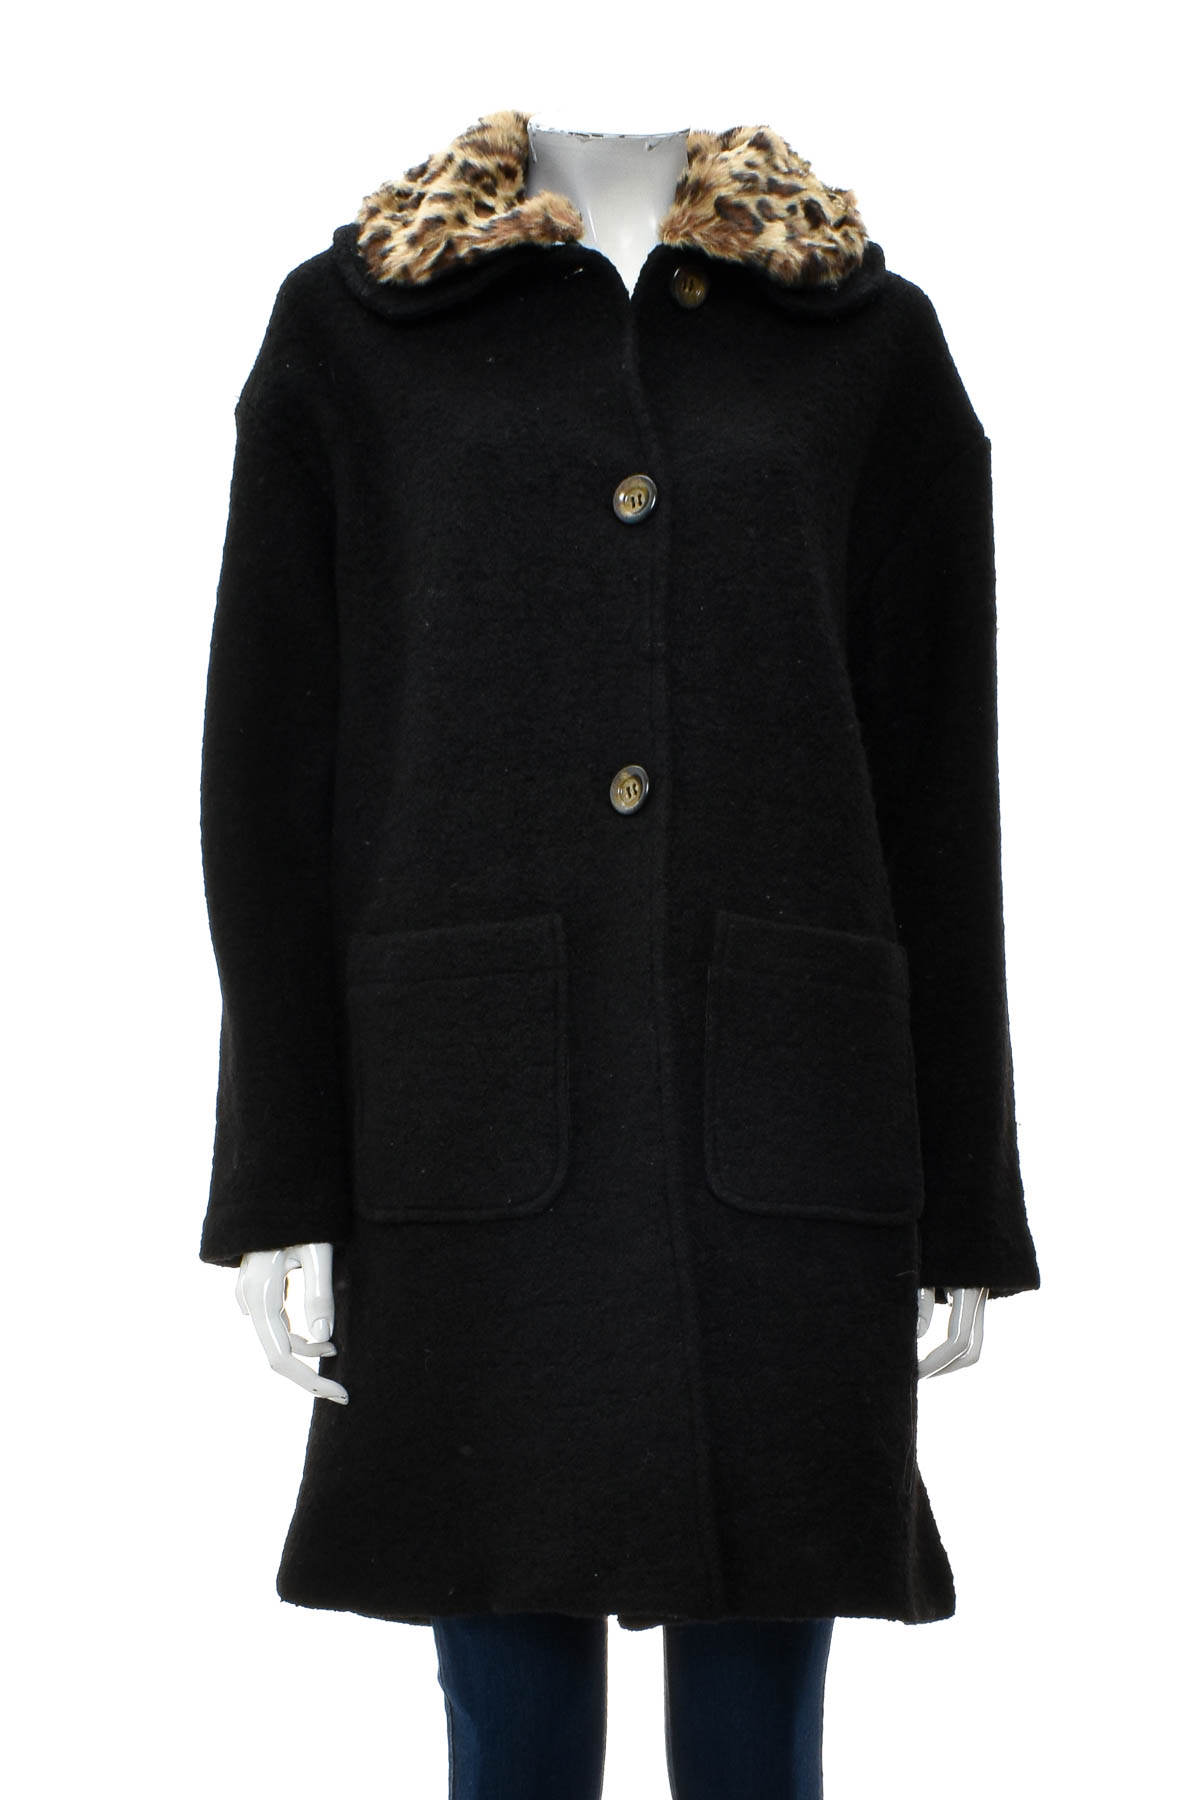 Γυναικείο παλτό - Bella Loren - 0